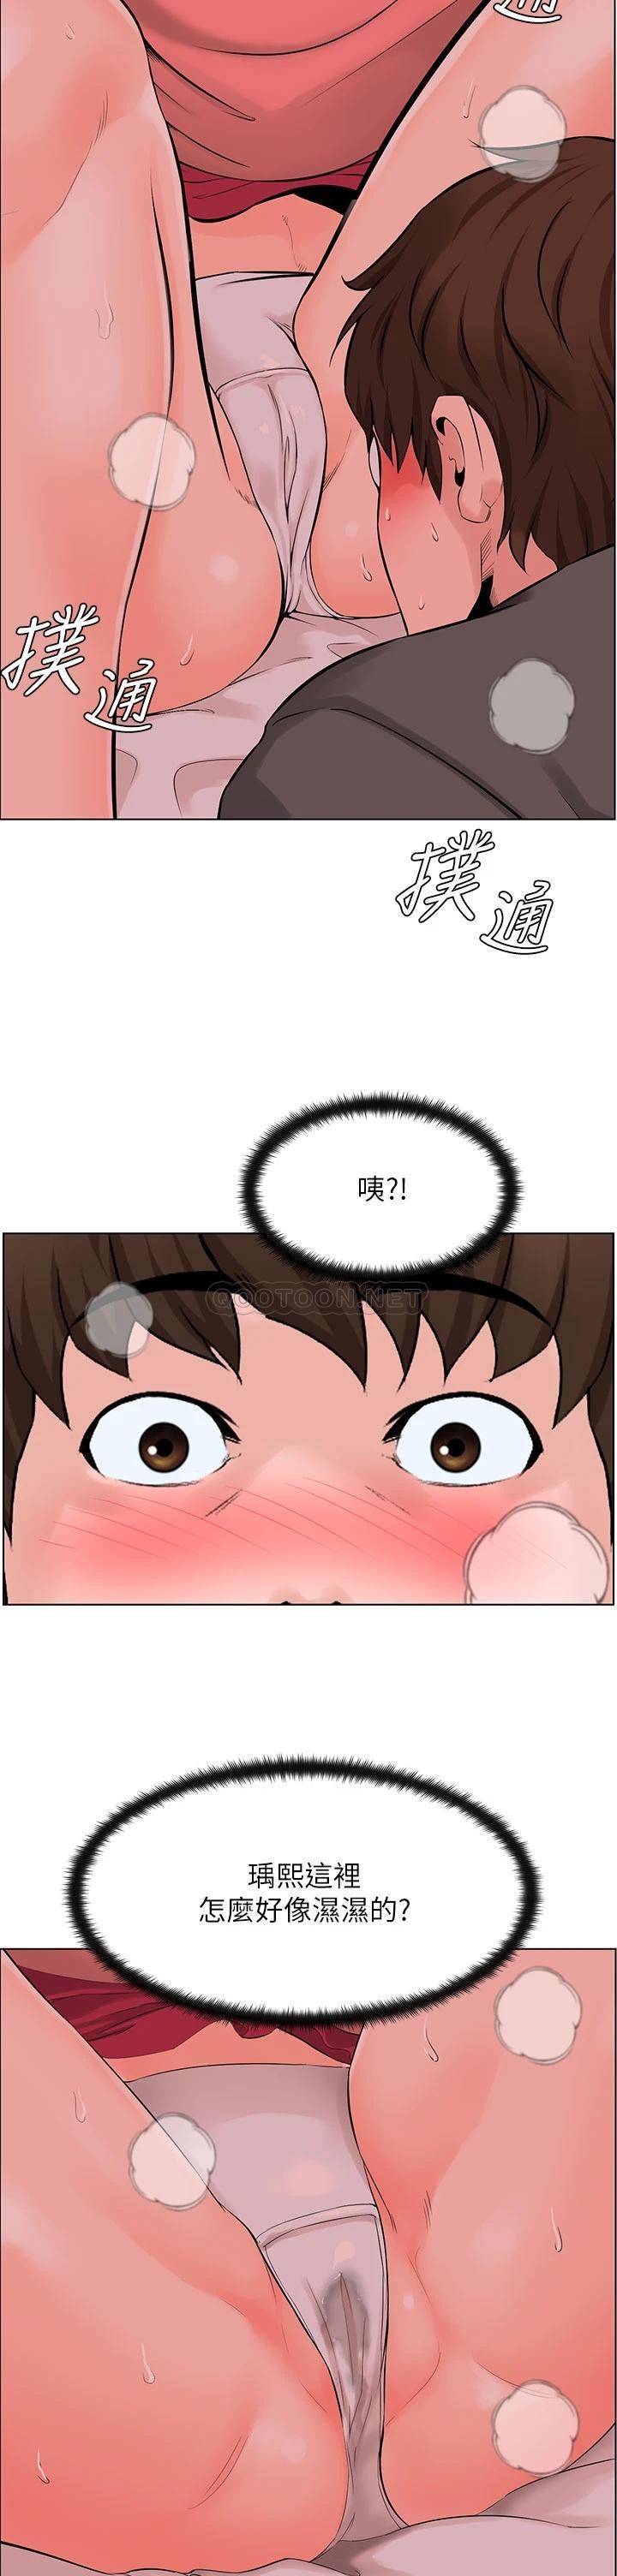 韩国污漫画 現上教學 第9话汗水淋漓的车震 3